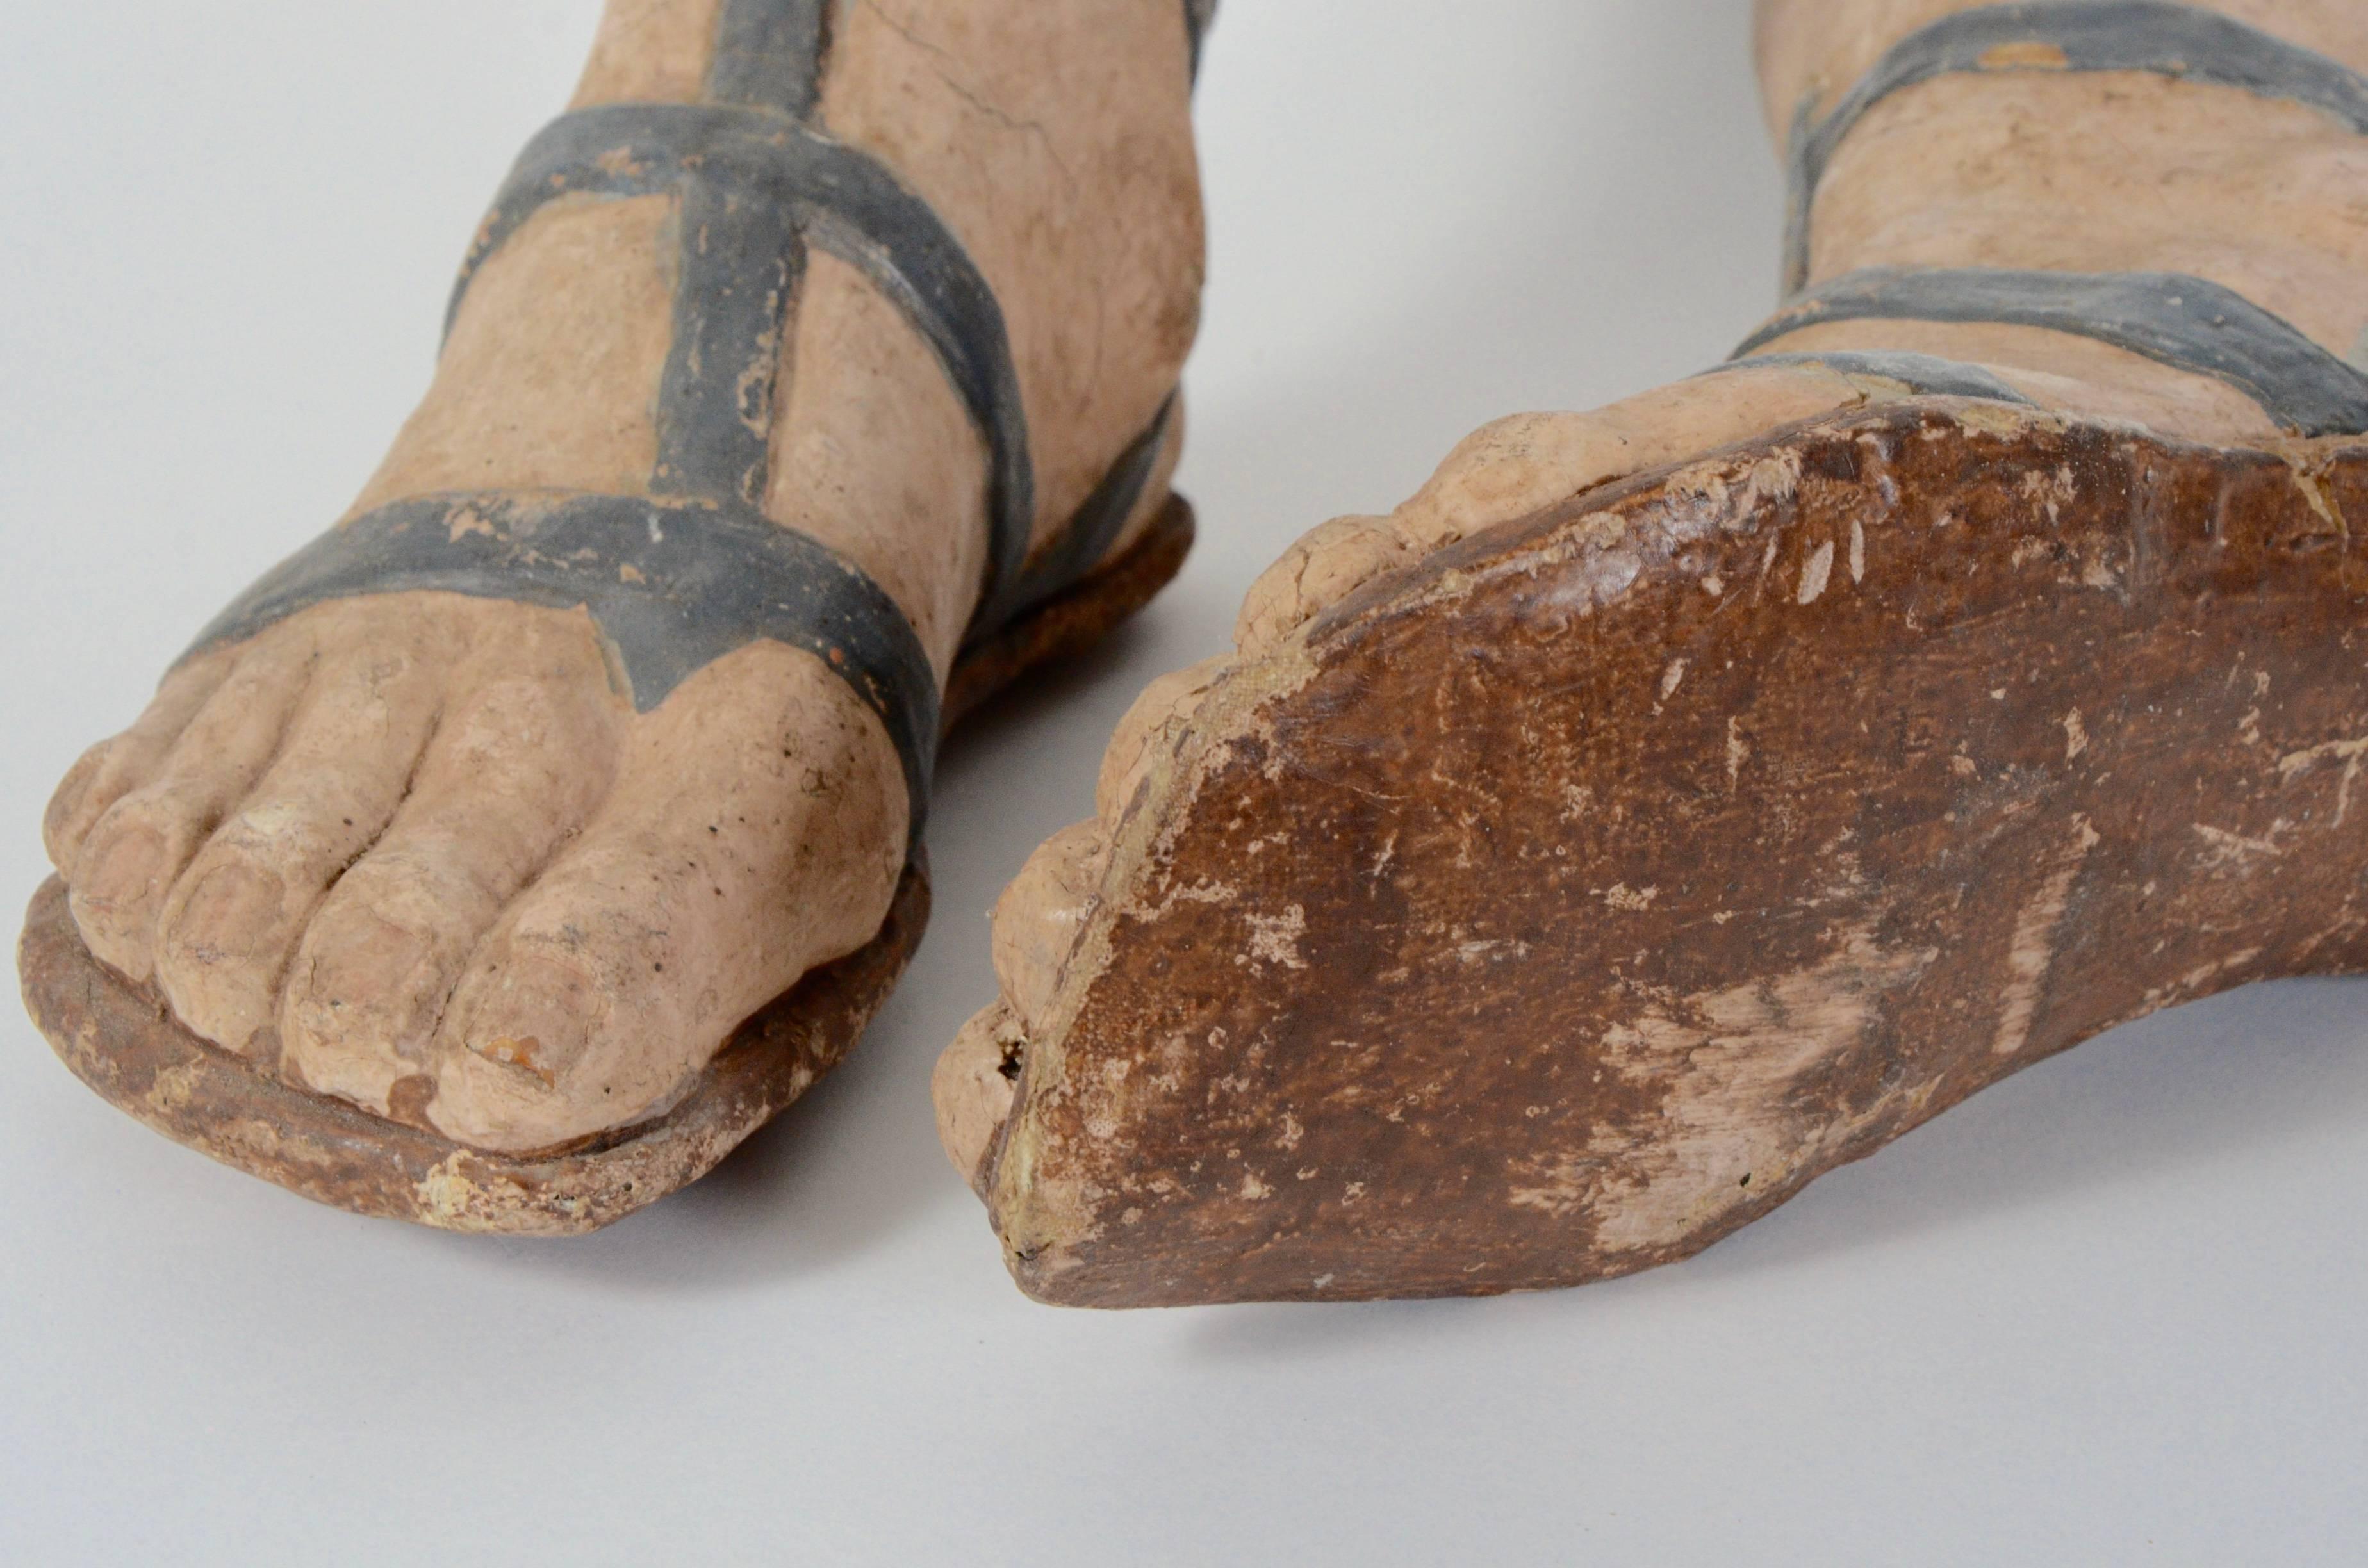 18th century sandals